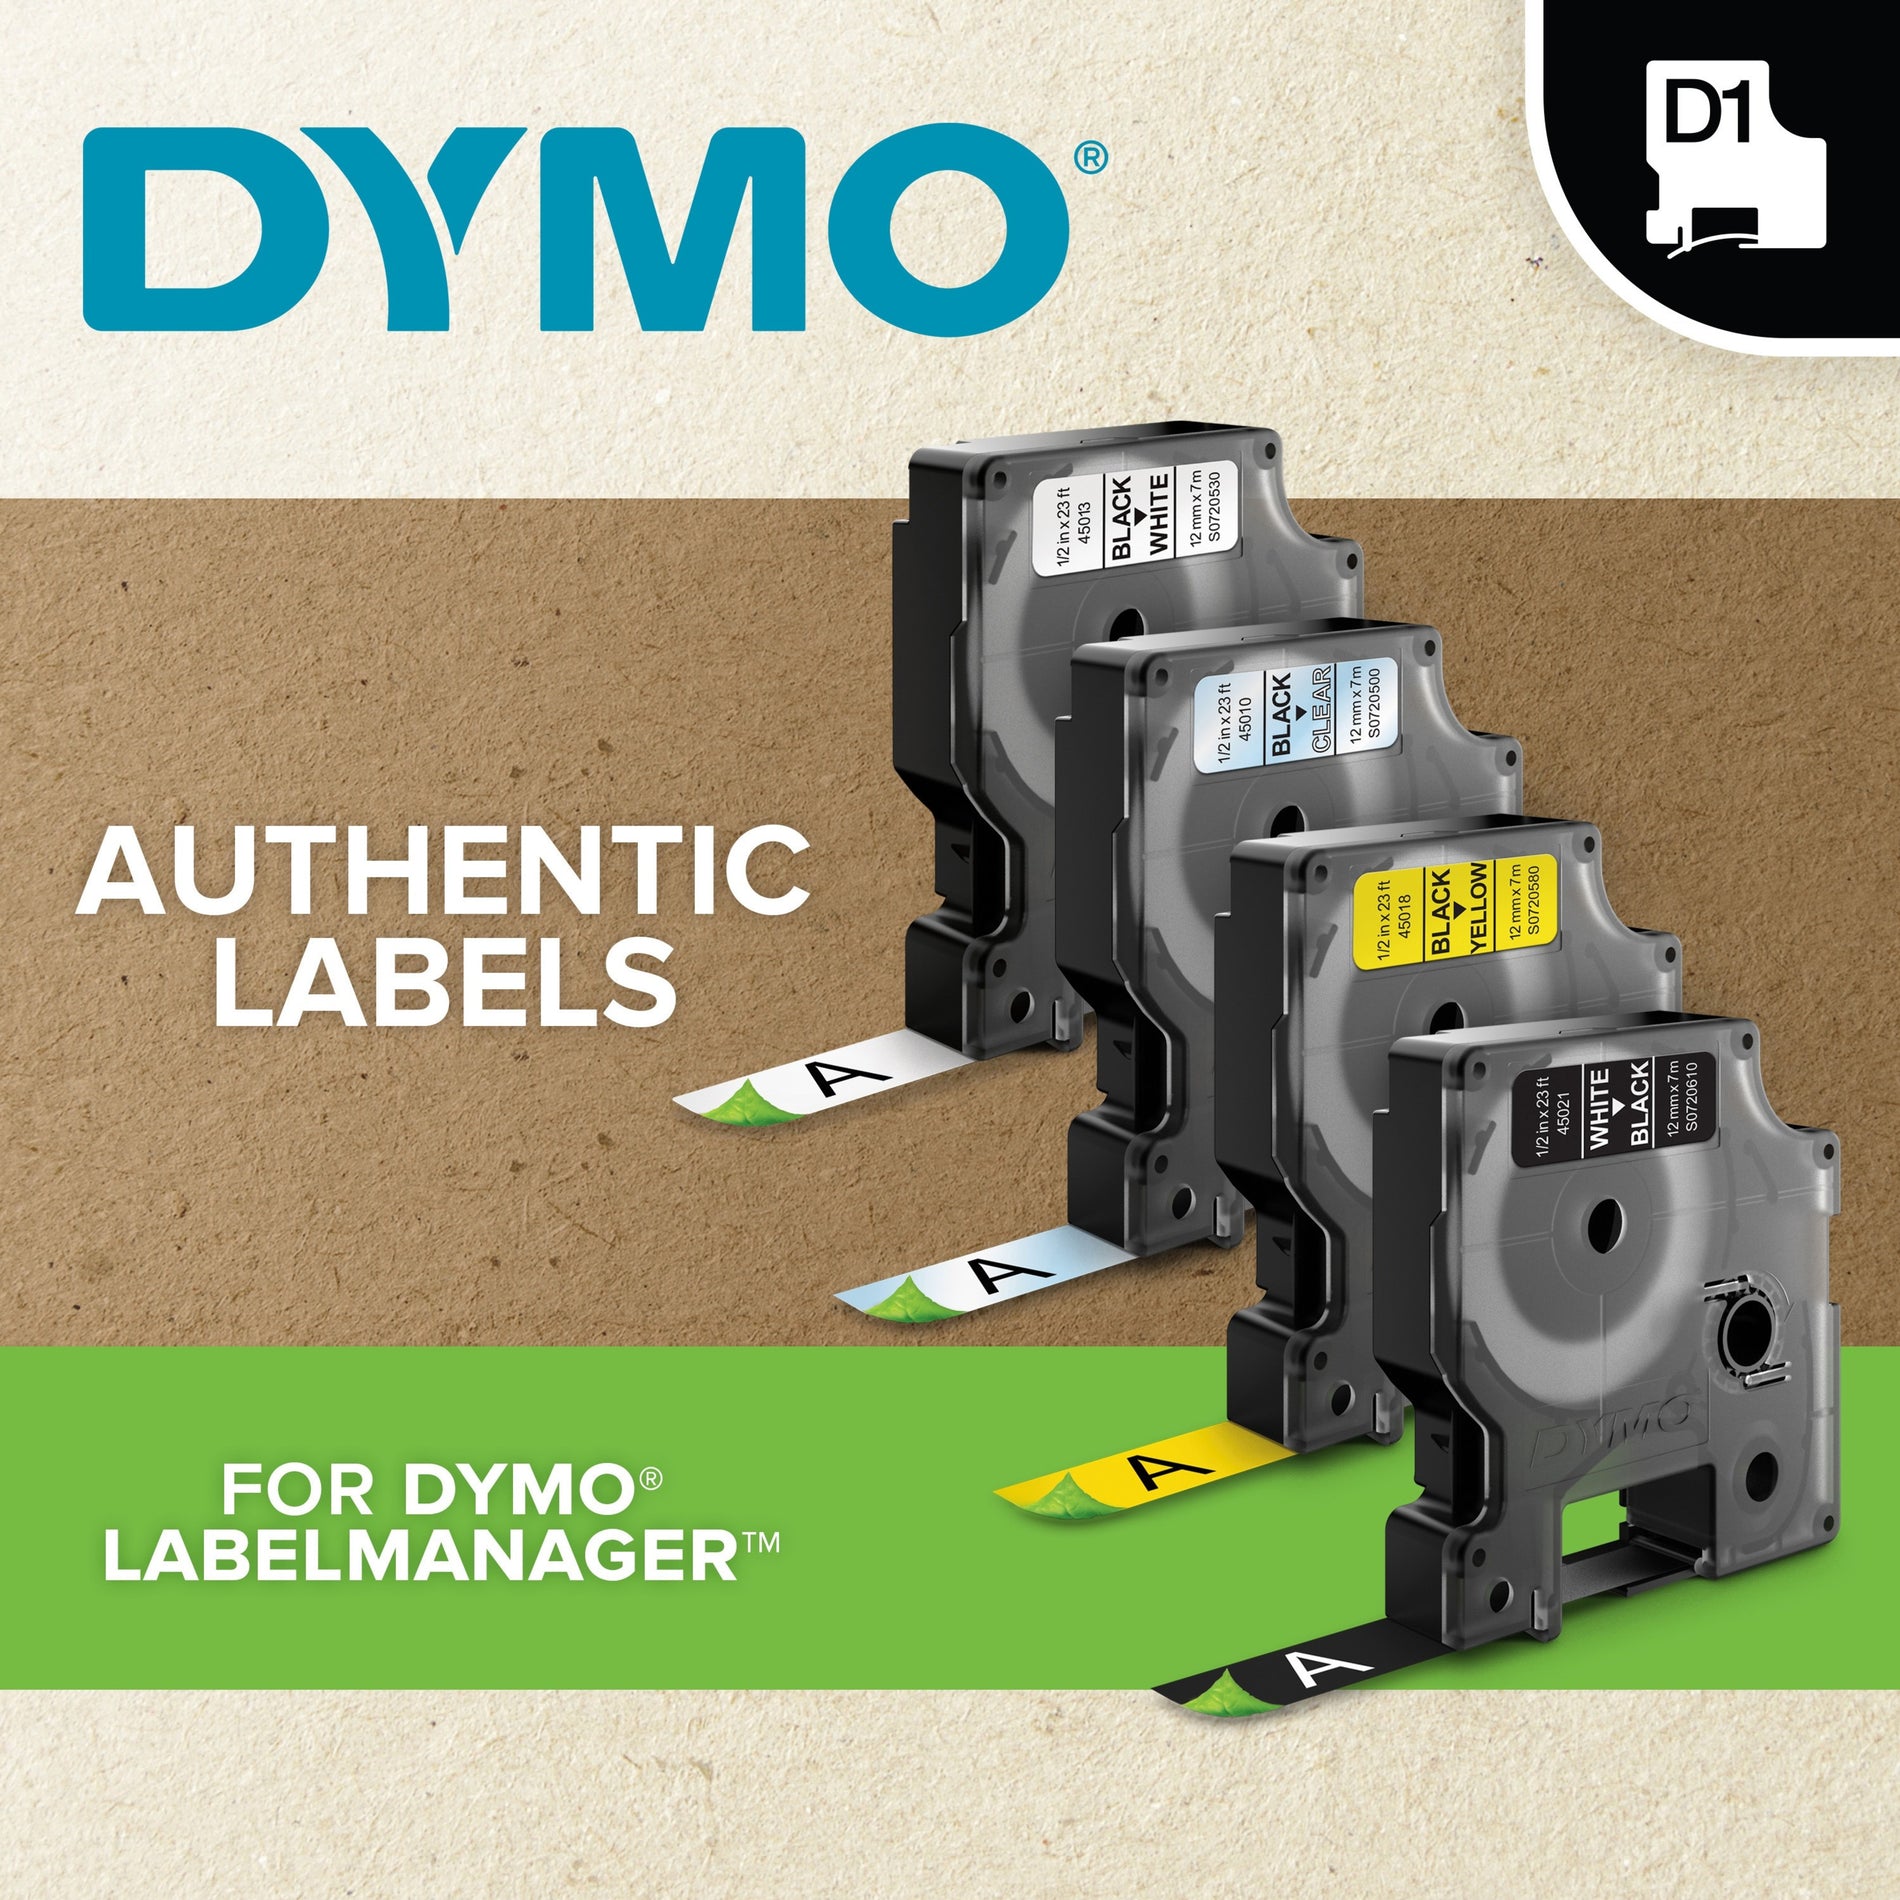 Dymo 43613 D1 Electronic Tape Cartridge, 1/4"x23' Size, Black/White